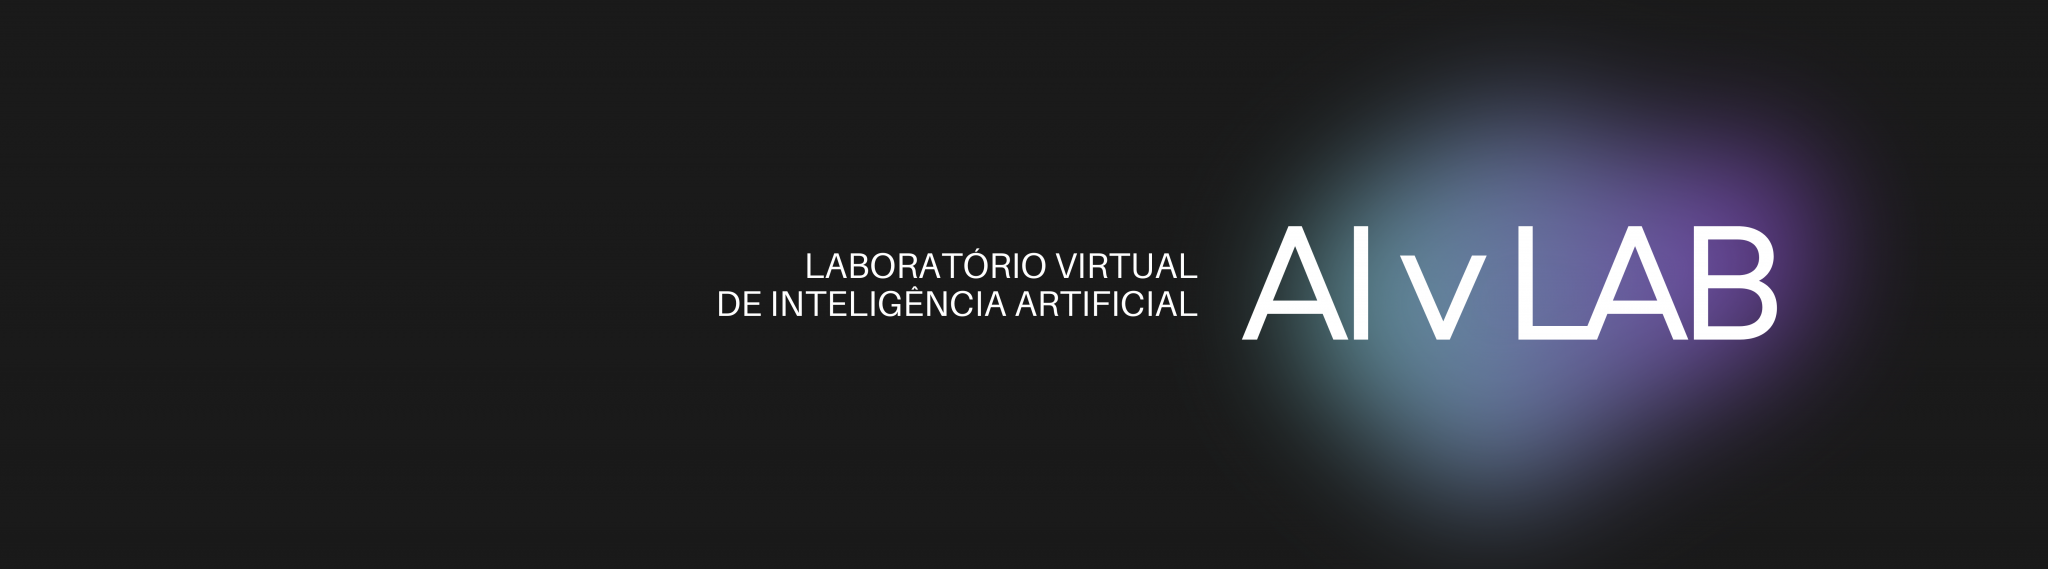 Imagem alusiva ao Laboratório Virtual de Inteligência Artificial - AIvLab